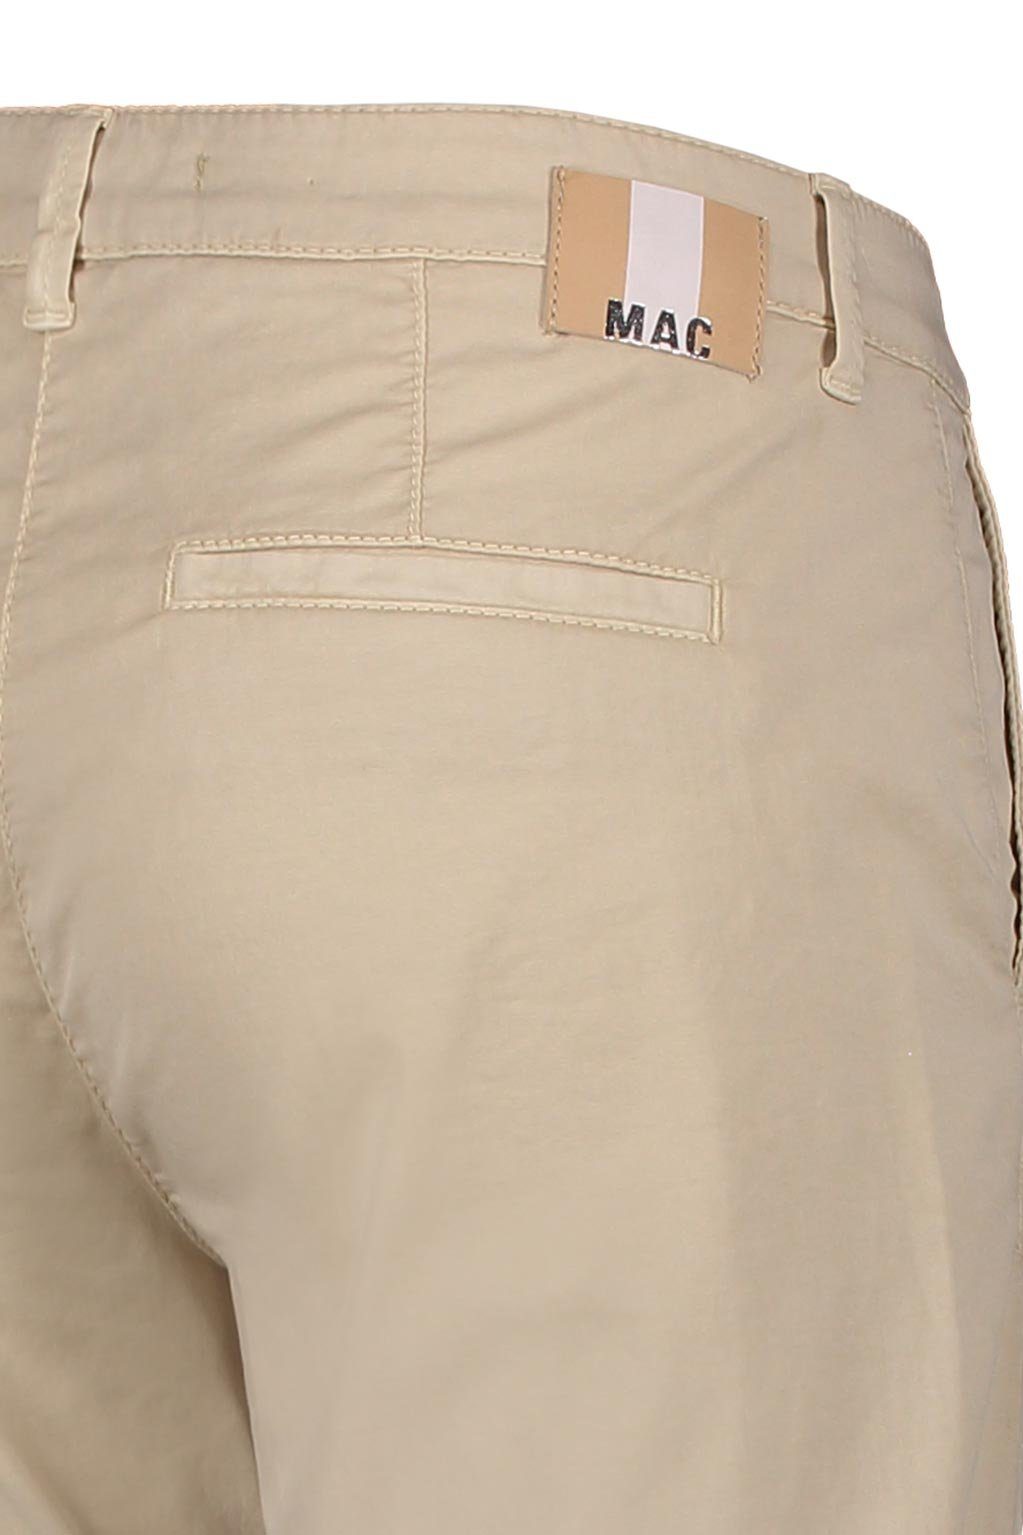 PPT MAC beige CHINO 205R MAC 3070-00-0408L wheat Stretch-Jeans